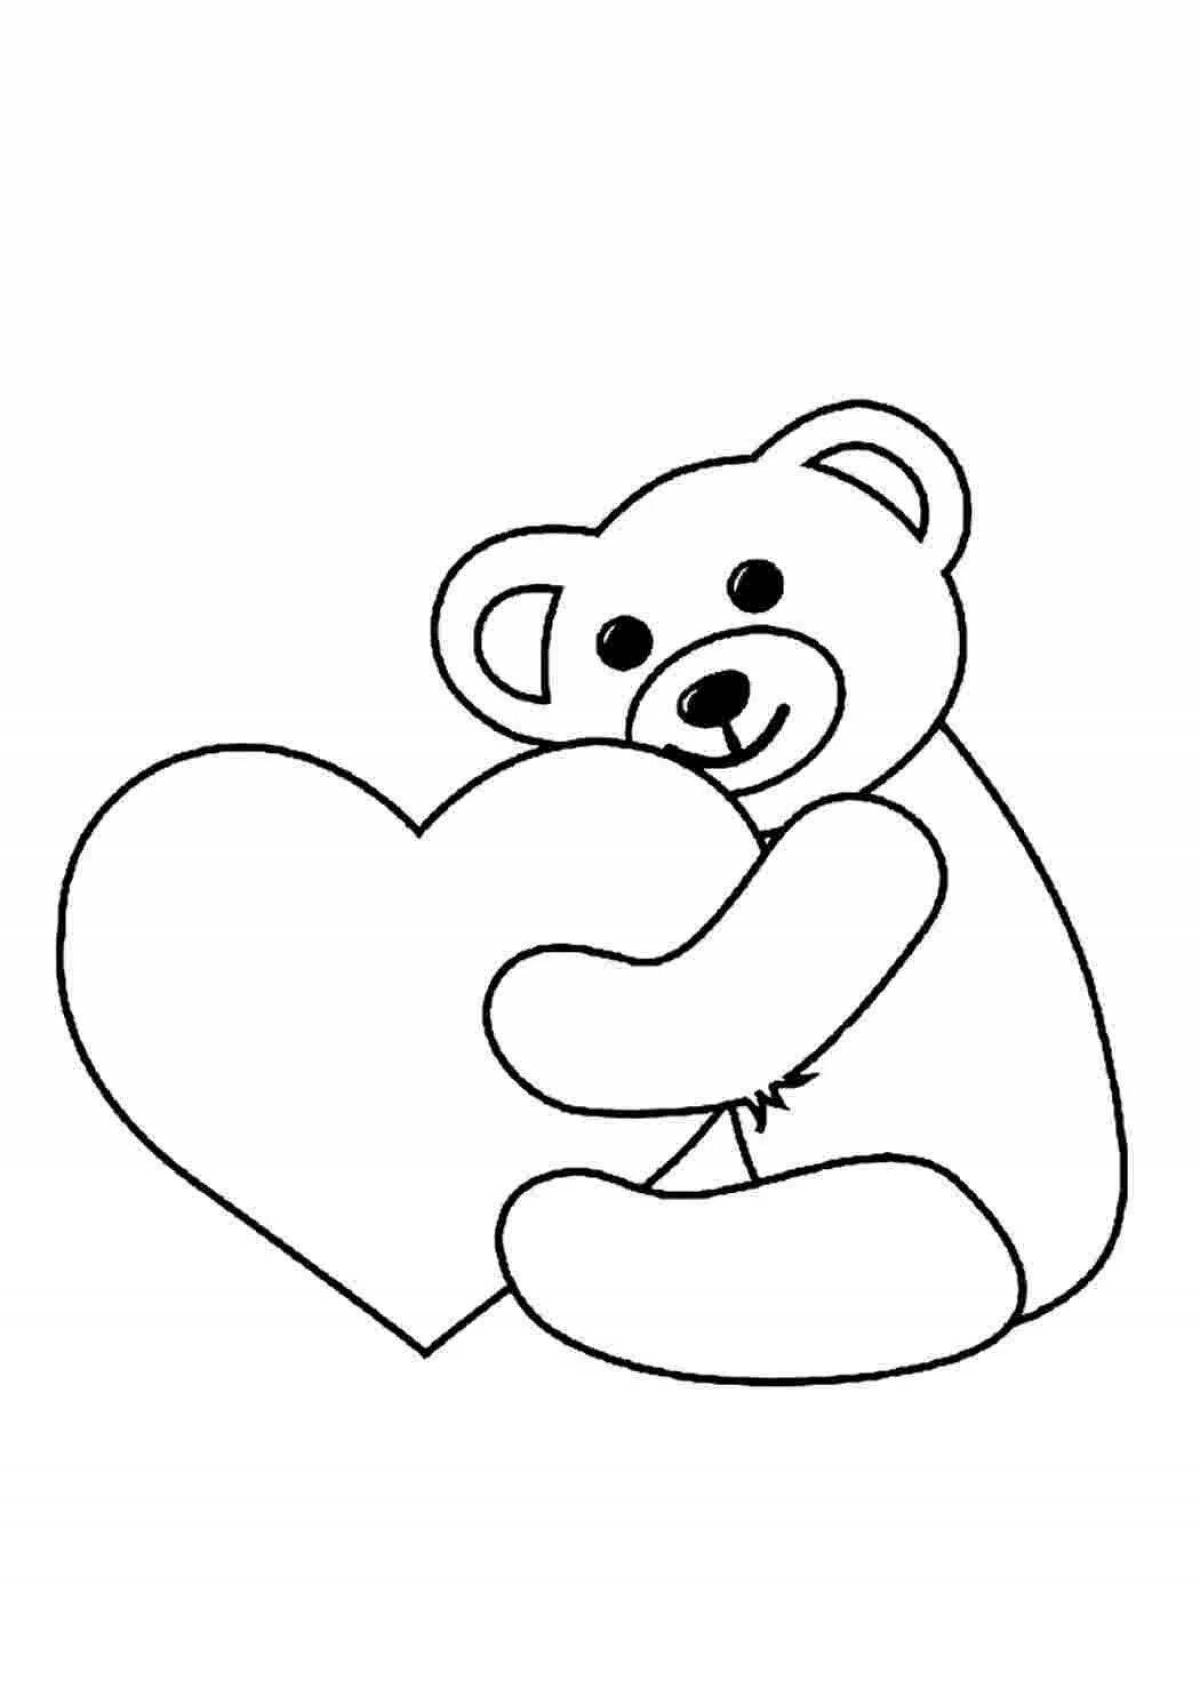 Sweet bear with heart pattern